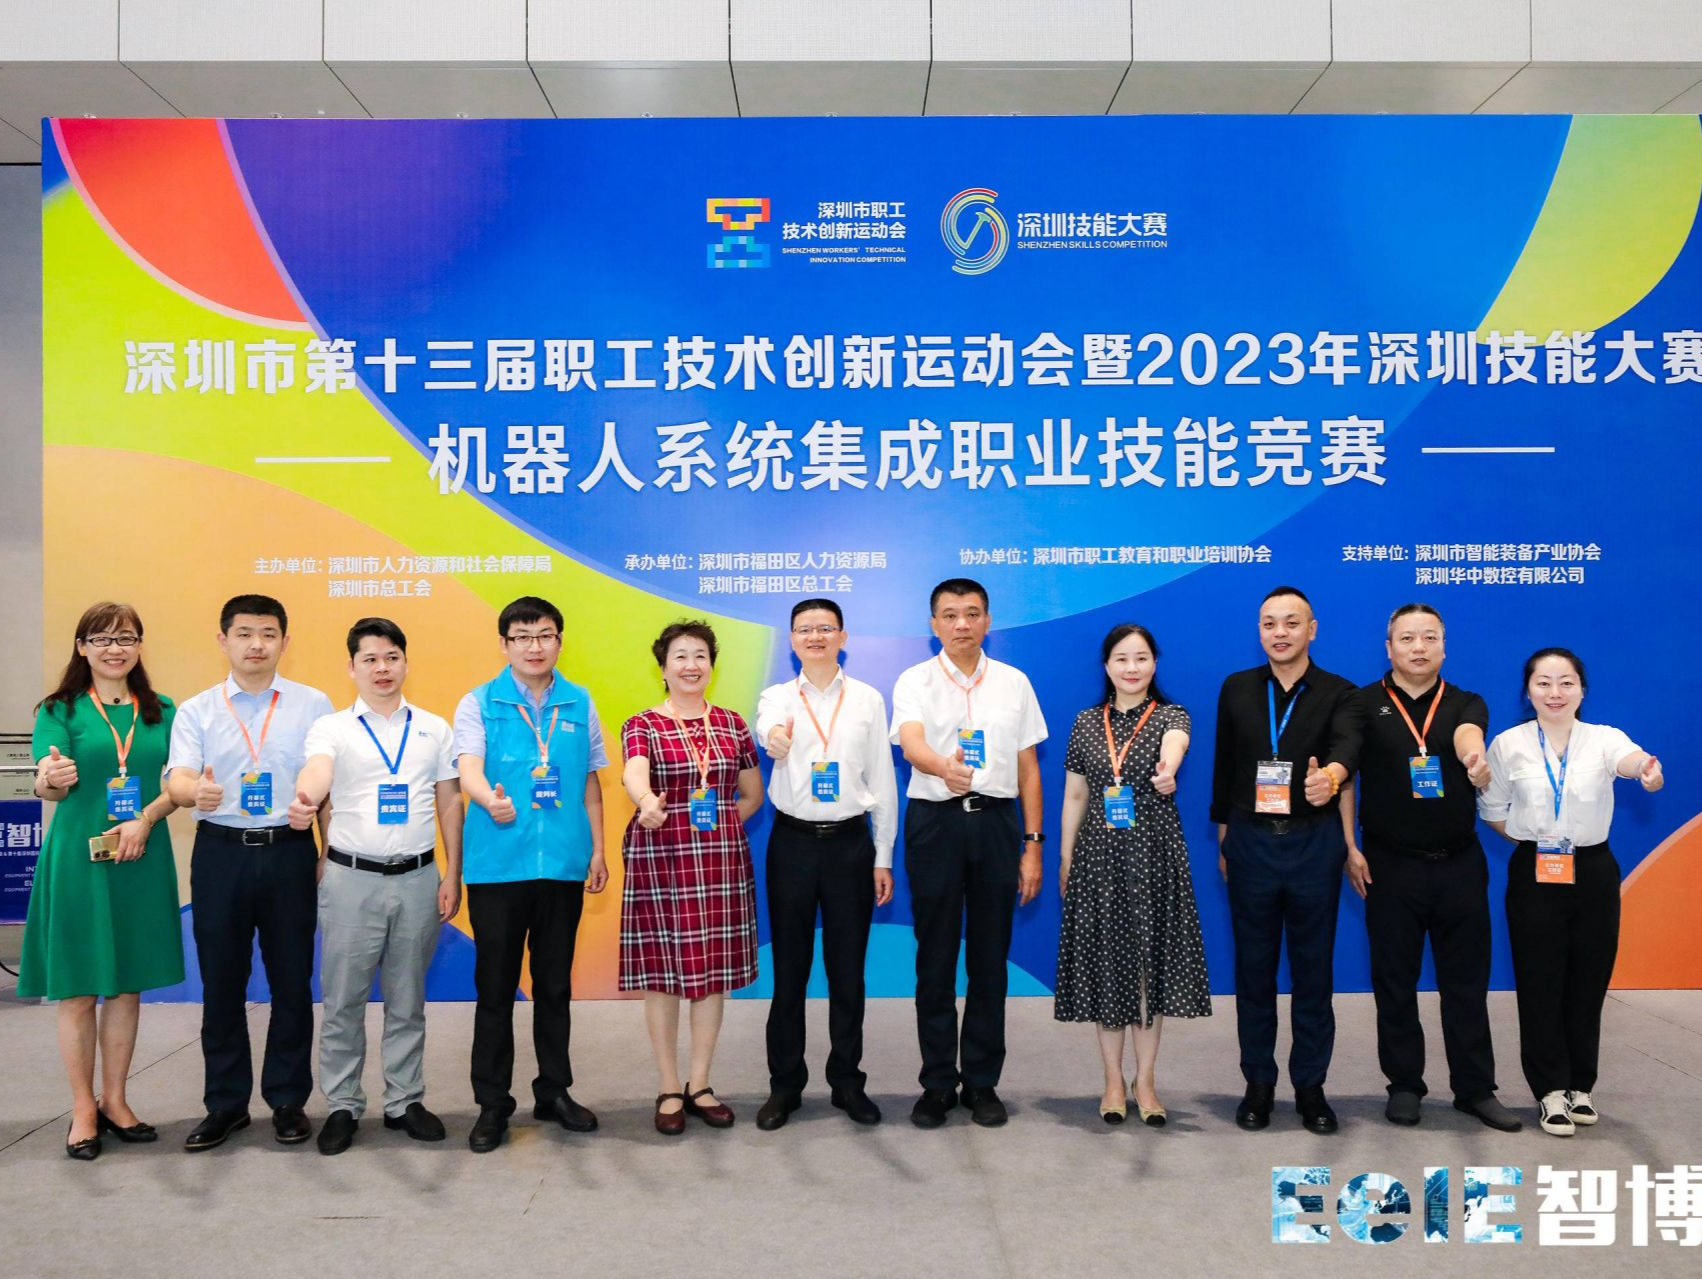 深圳技能大赛机器人系统集成项目职业技能竞赛举行